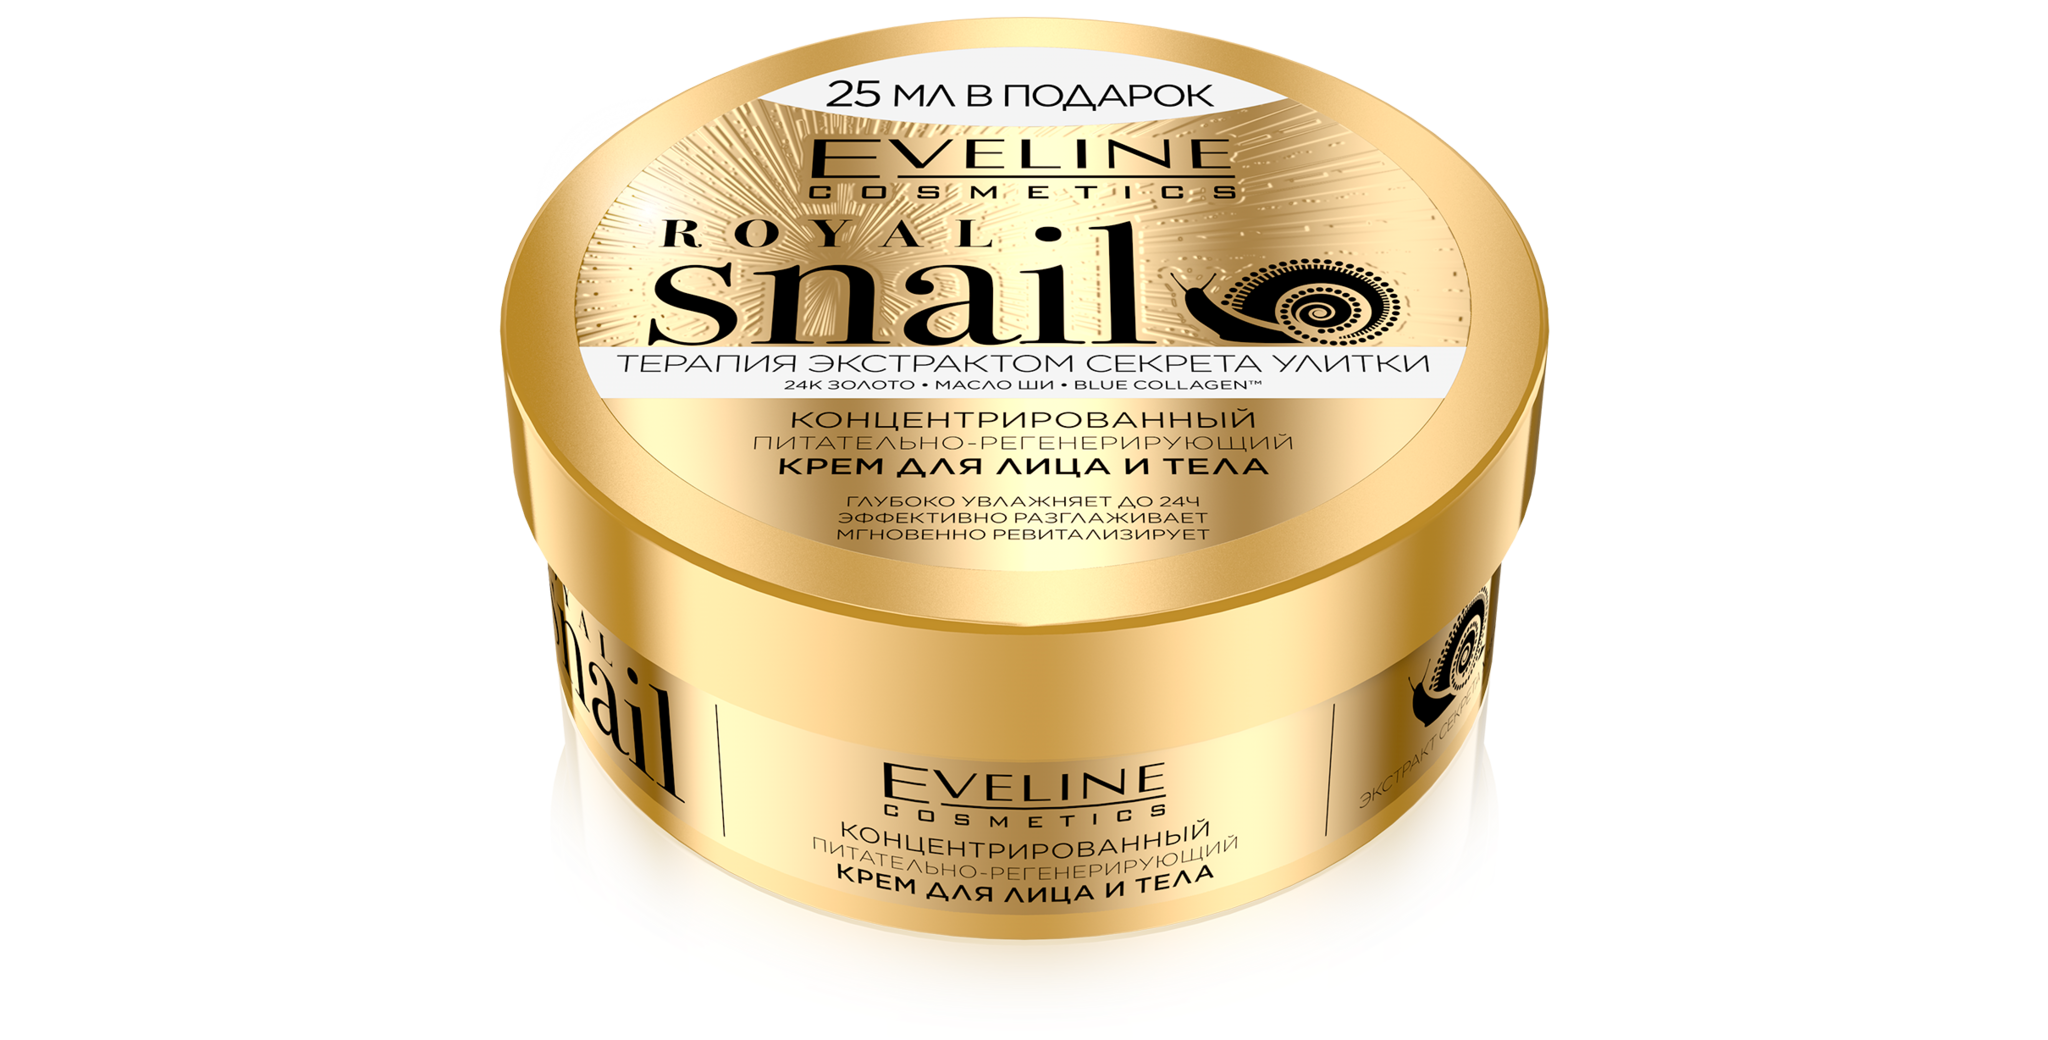 Eveline Royal Snail Крем для лица и тела Концентрированный питательно-регенер, 200 мл